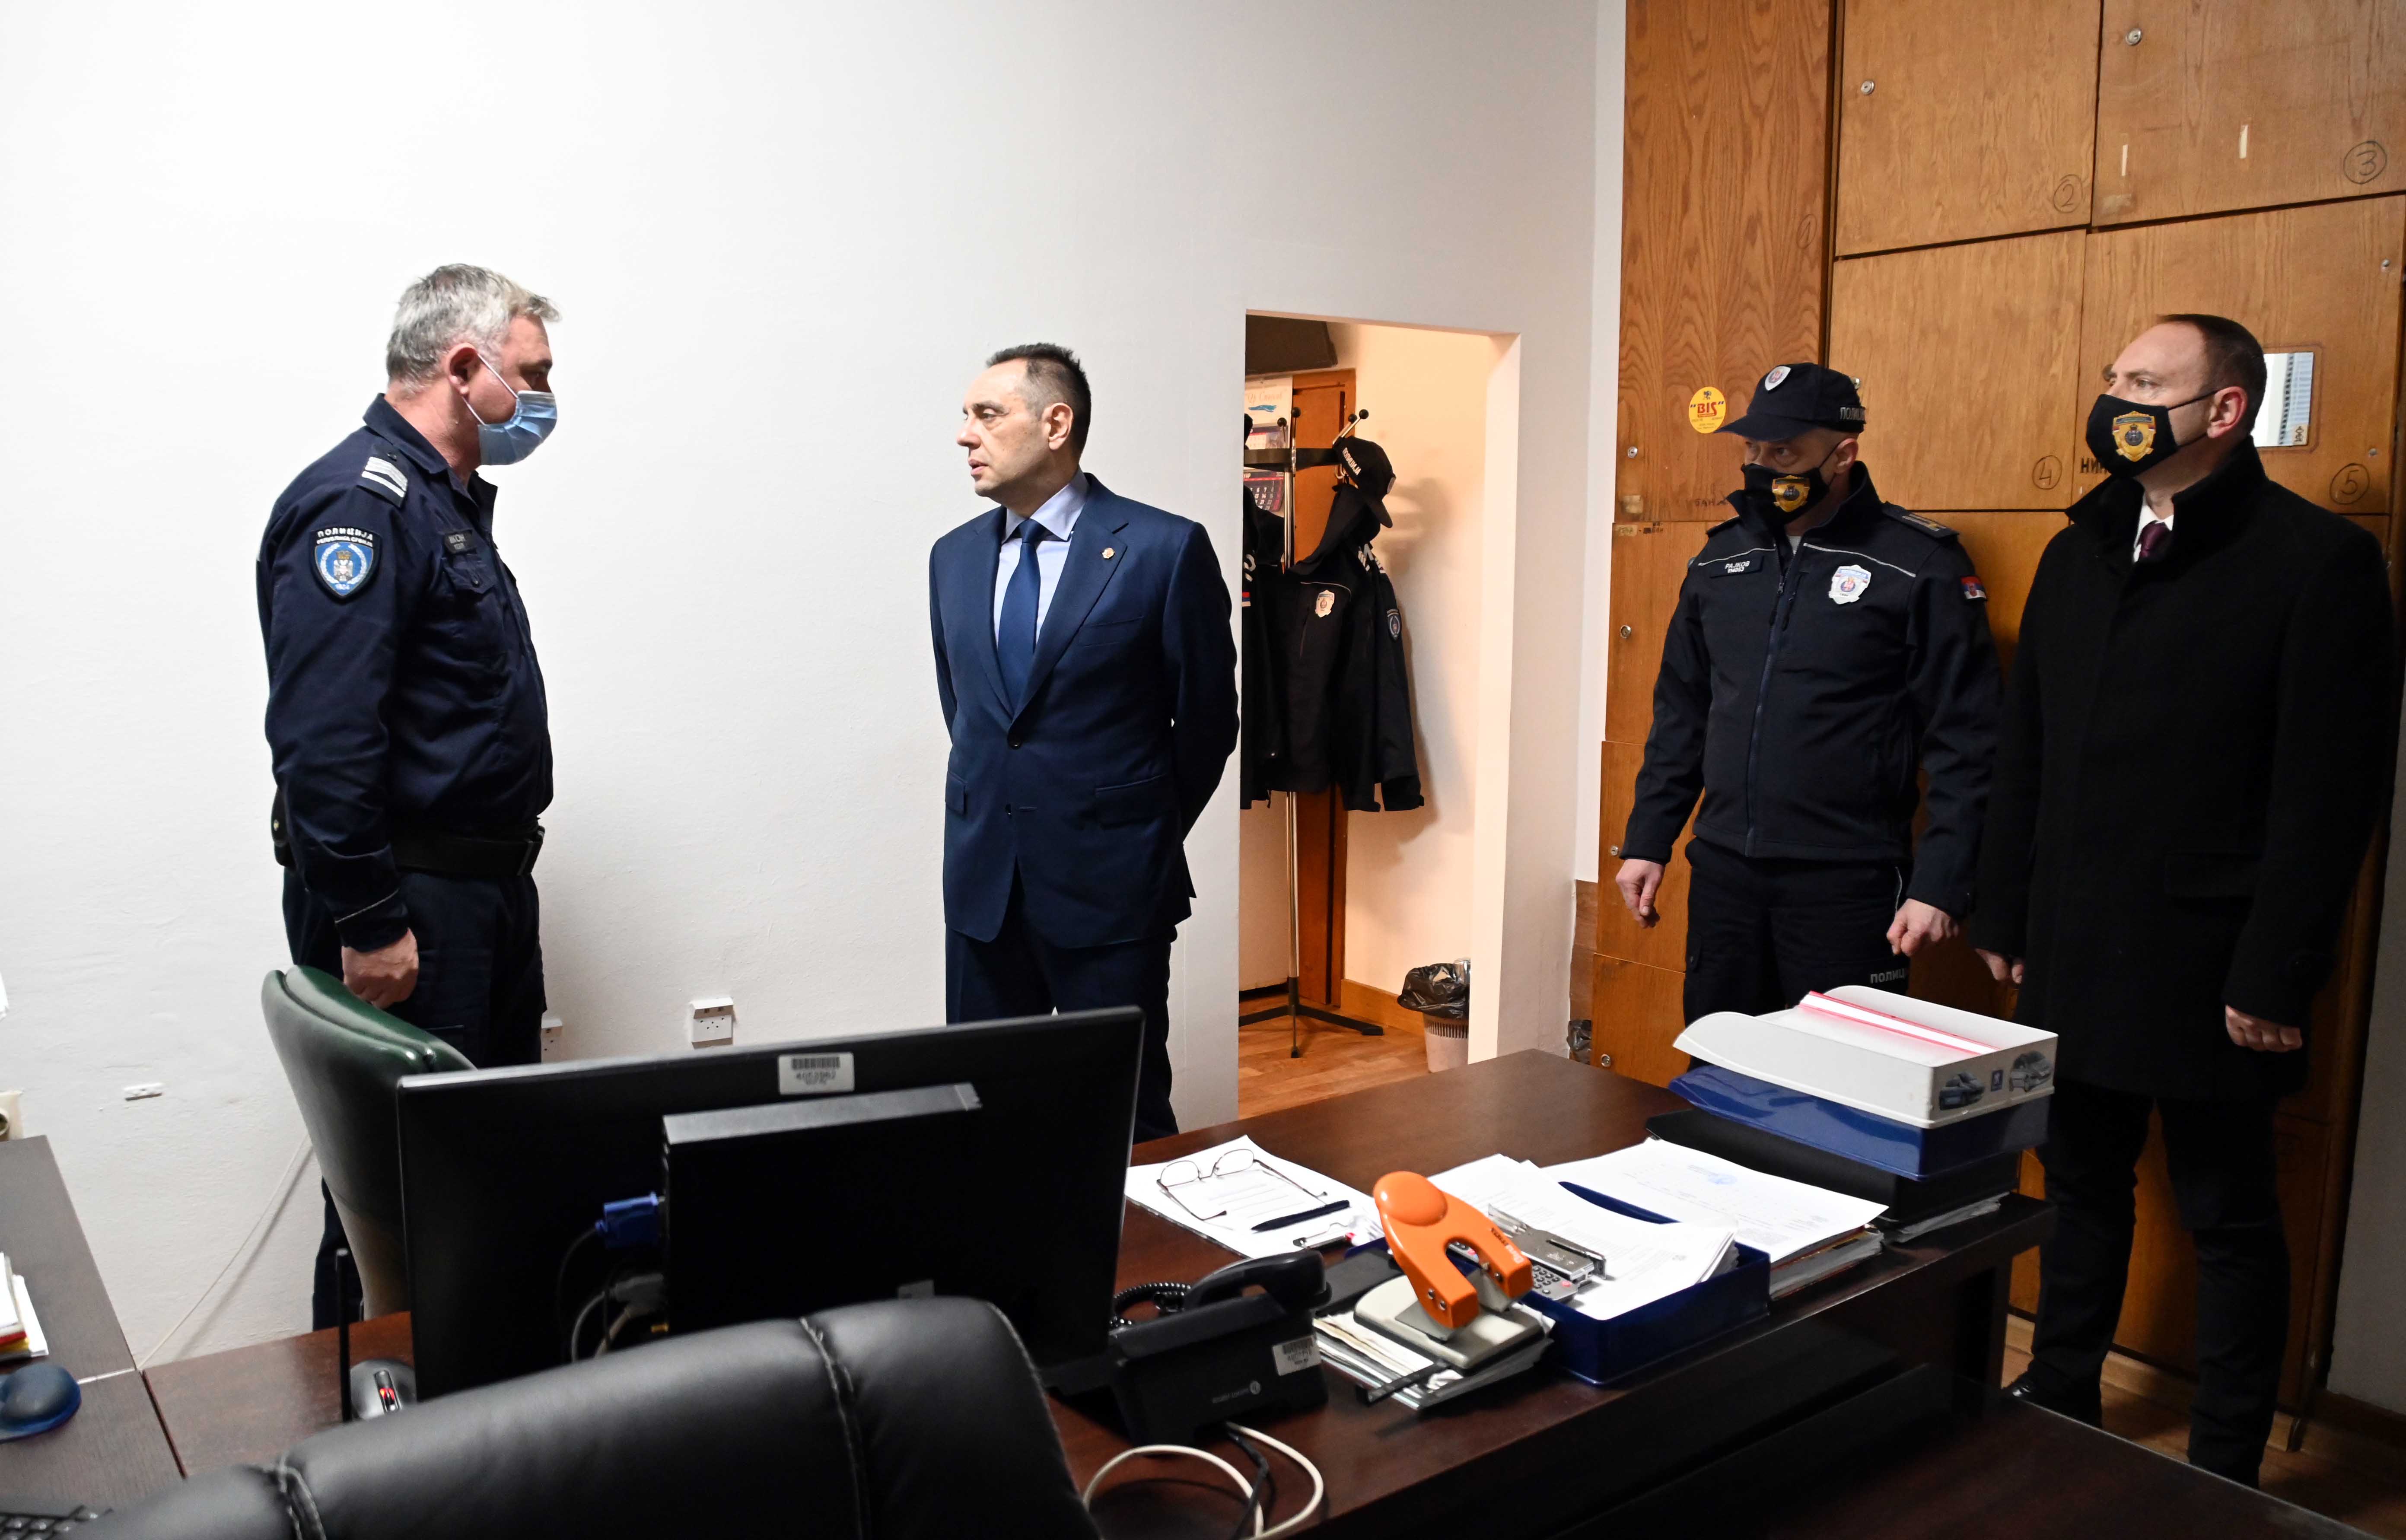 Ministar Vulin obišao PU Kikinda: Za srpsku policiju ne postoji krupan i sitan kriminal, hoću da se obični lјudi osećaju sigurno